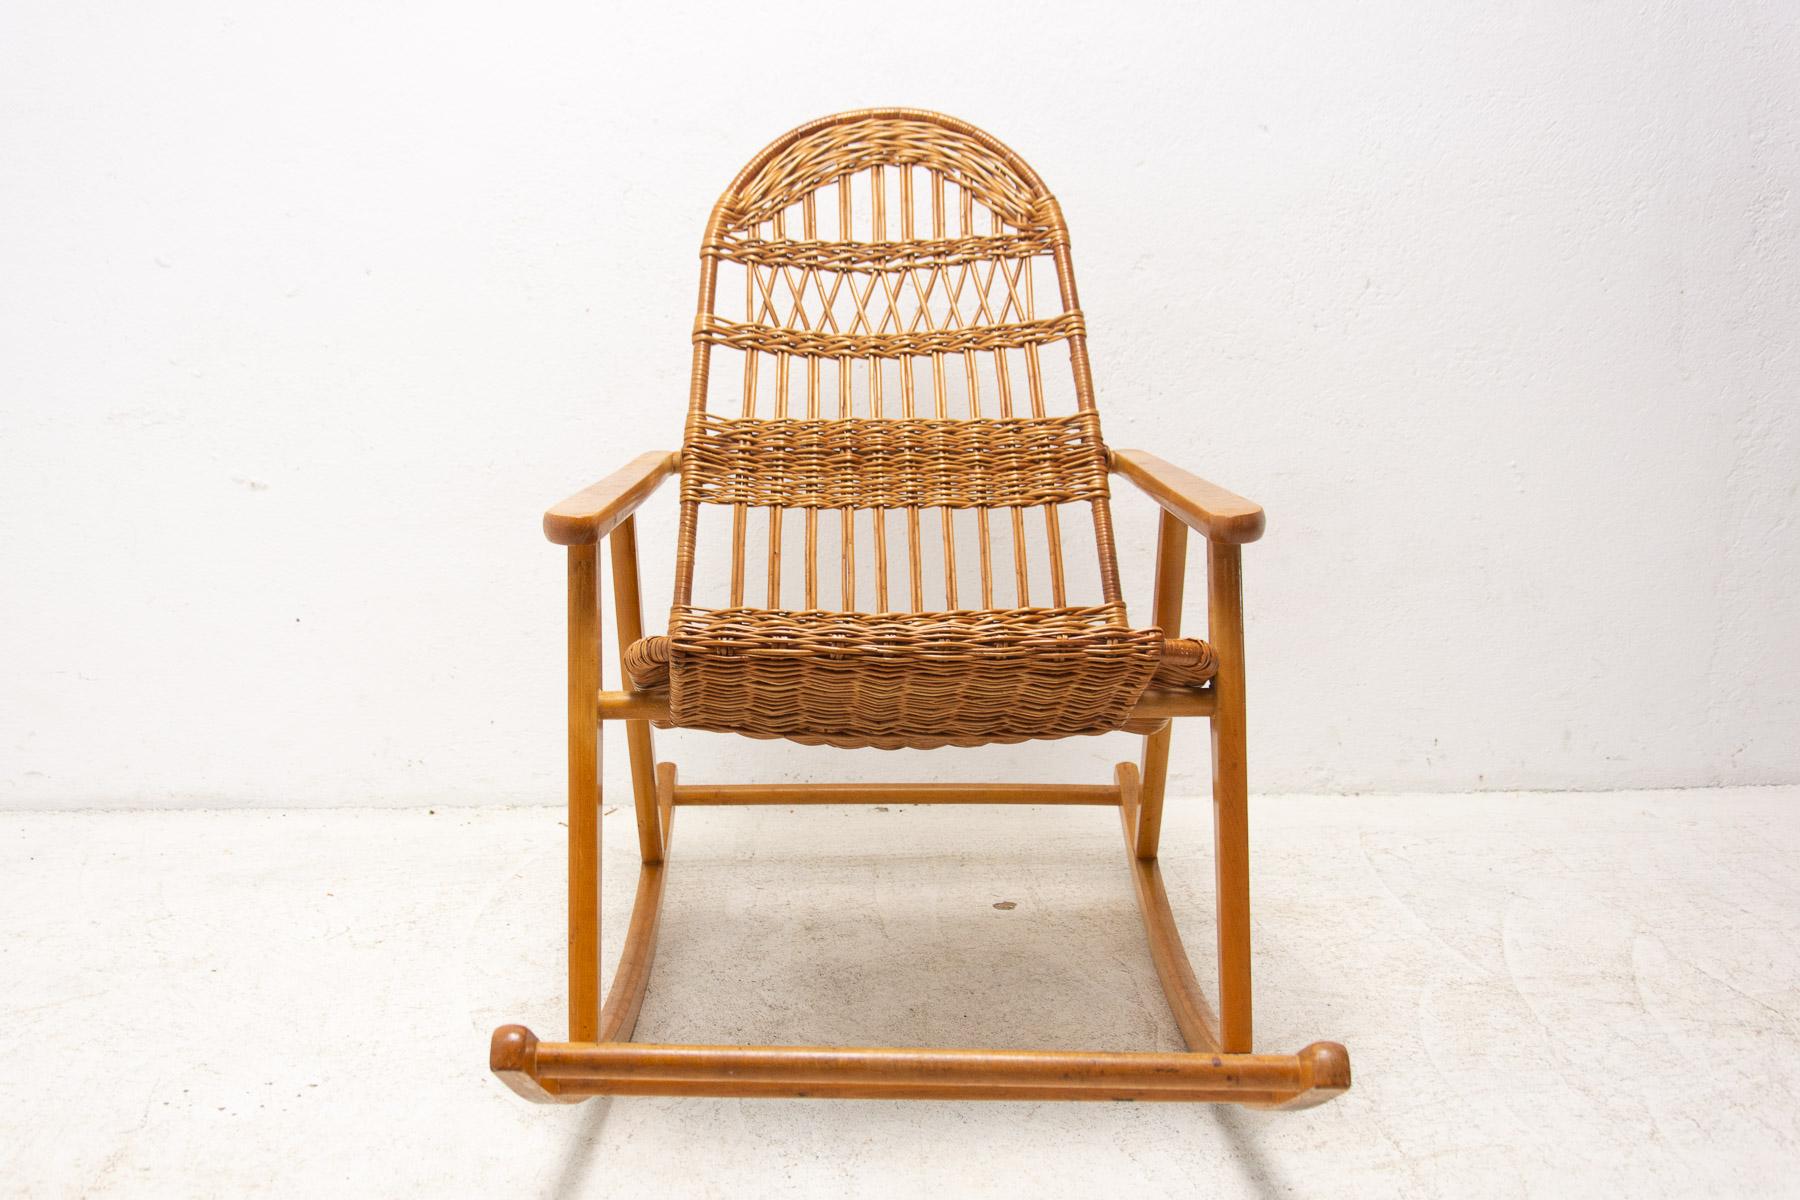 Cette chaise à bascule en osier a été fabriquée dans l'ancienne Tchécoslovaquie dans les années 1960. Il est fait en bois de hêtre. Il est en très bon état Vintage.

Mesures : hauteur : 91 cm

largeur : 61 cm

profondeur : 110 cm

hauteur du